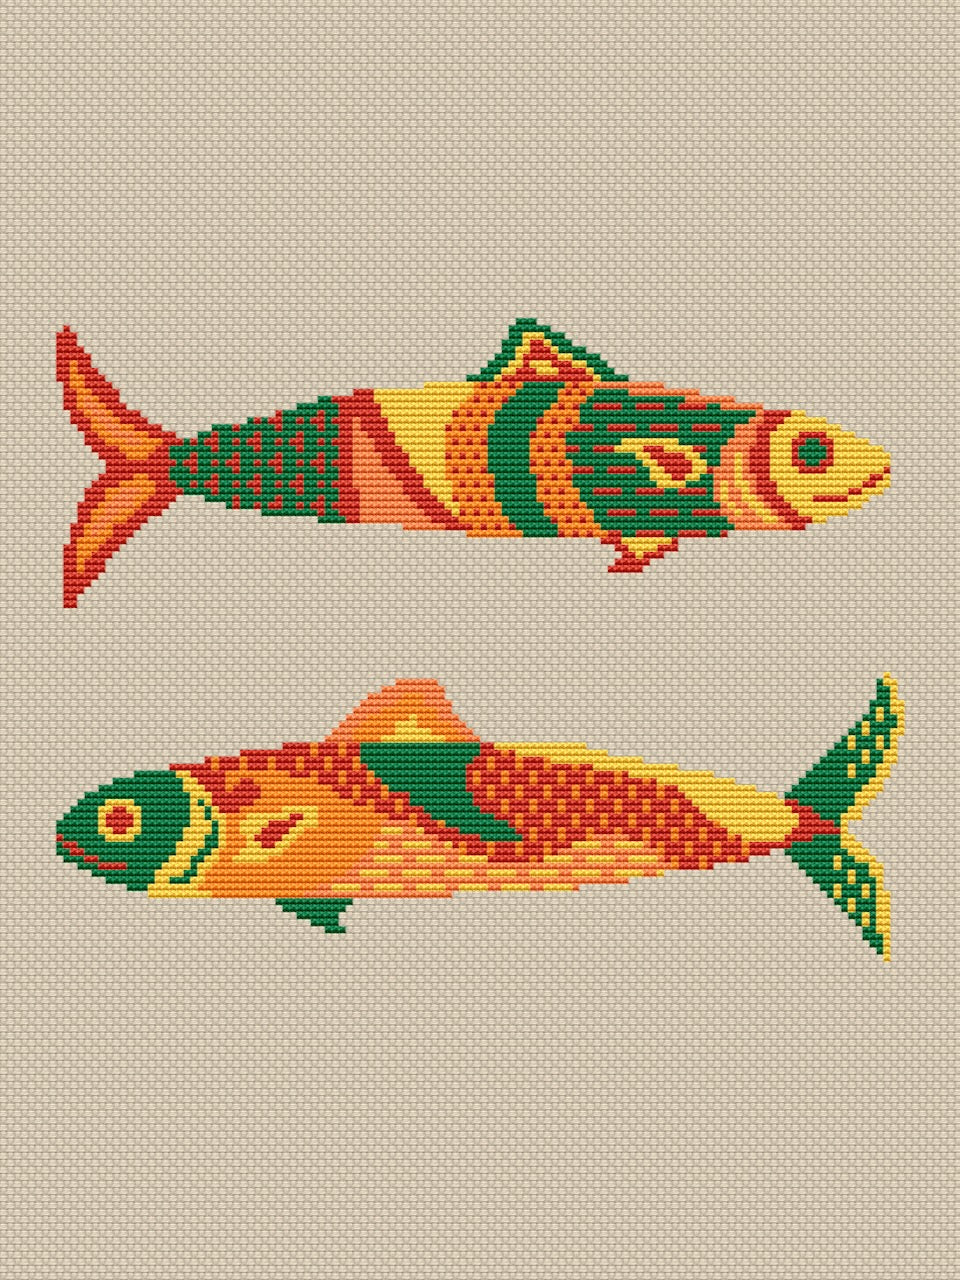 gold fish cross stitch pattern